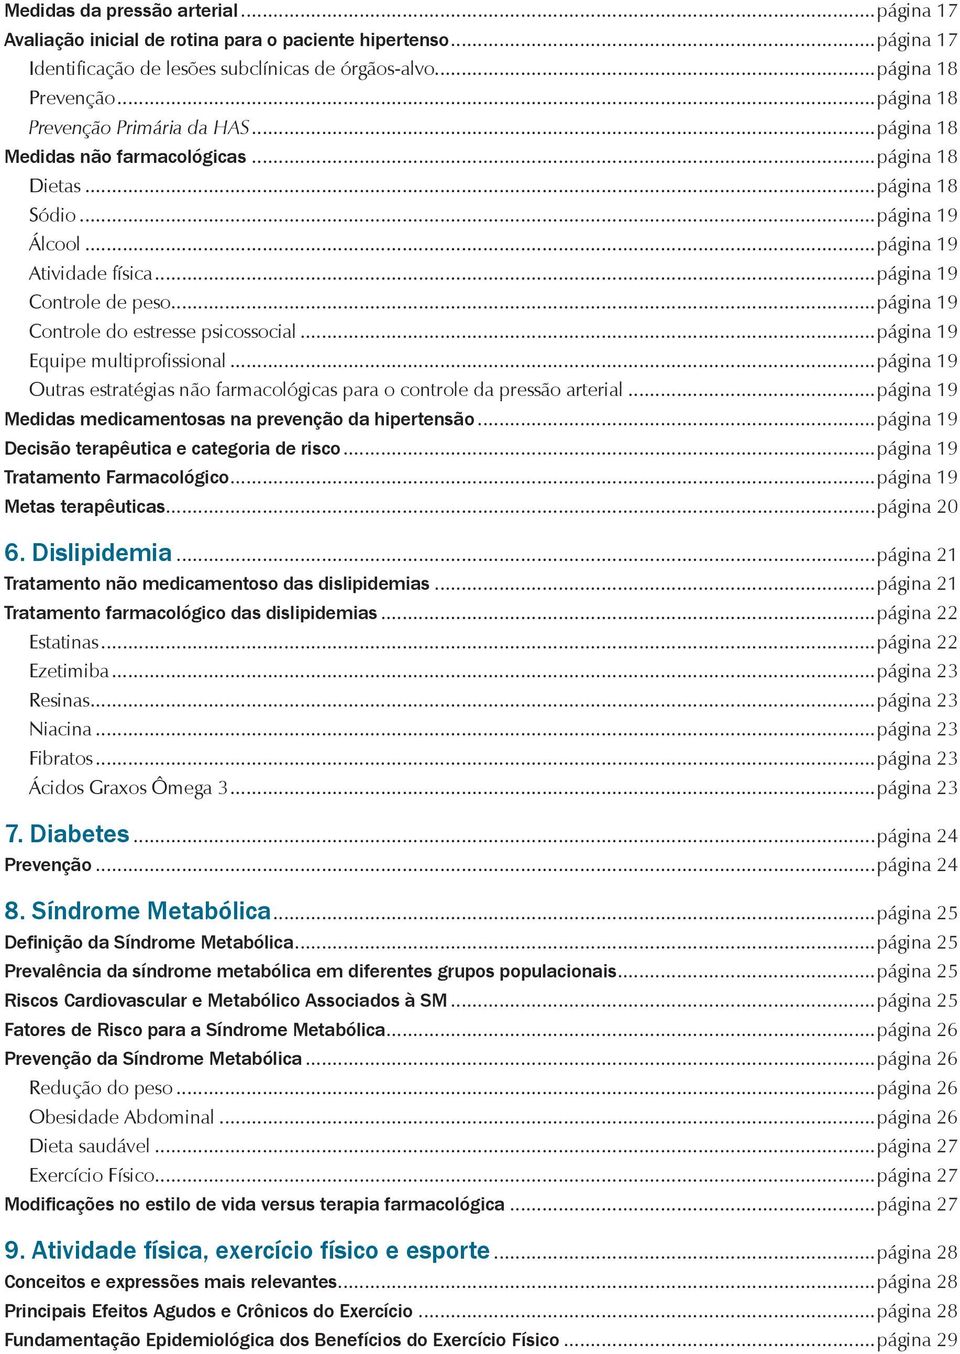 ..página 19 Controle do estresse psicossocial...página 19 Equipe multiprofissional...página 19 Outras estratégias não farmacológicas para o controle da pressão arterial.